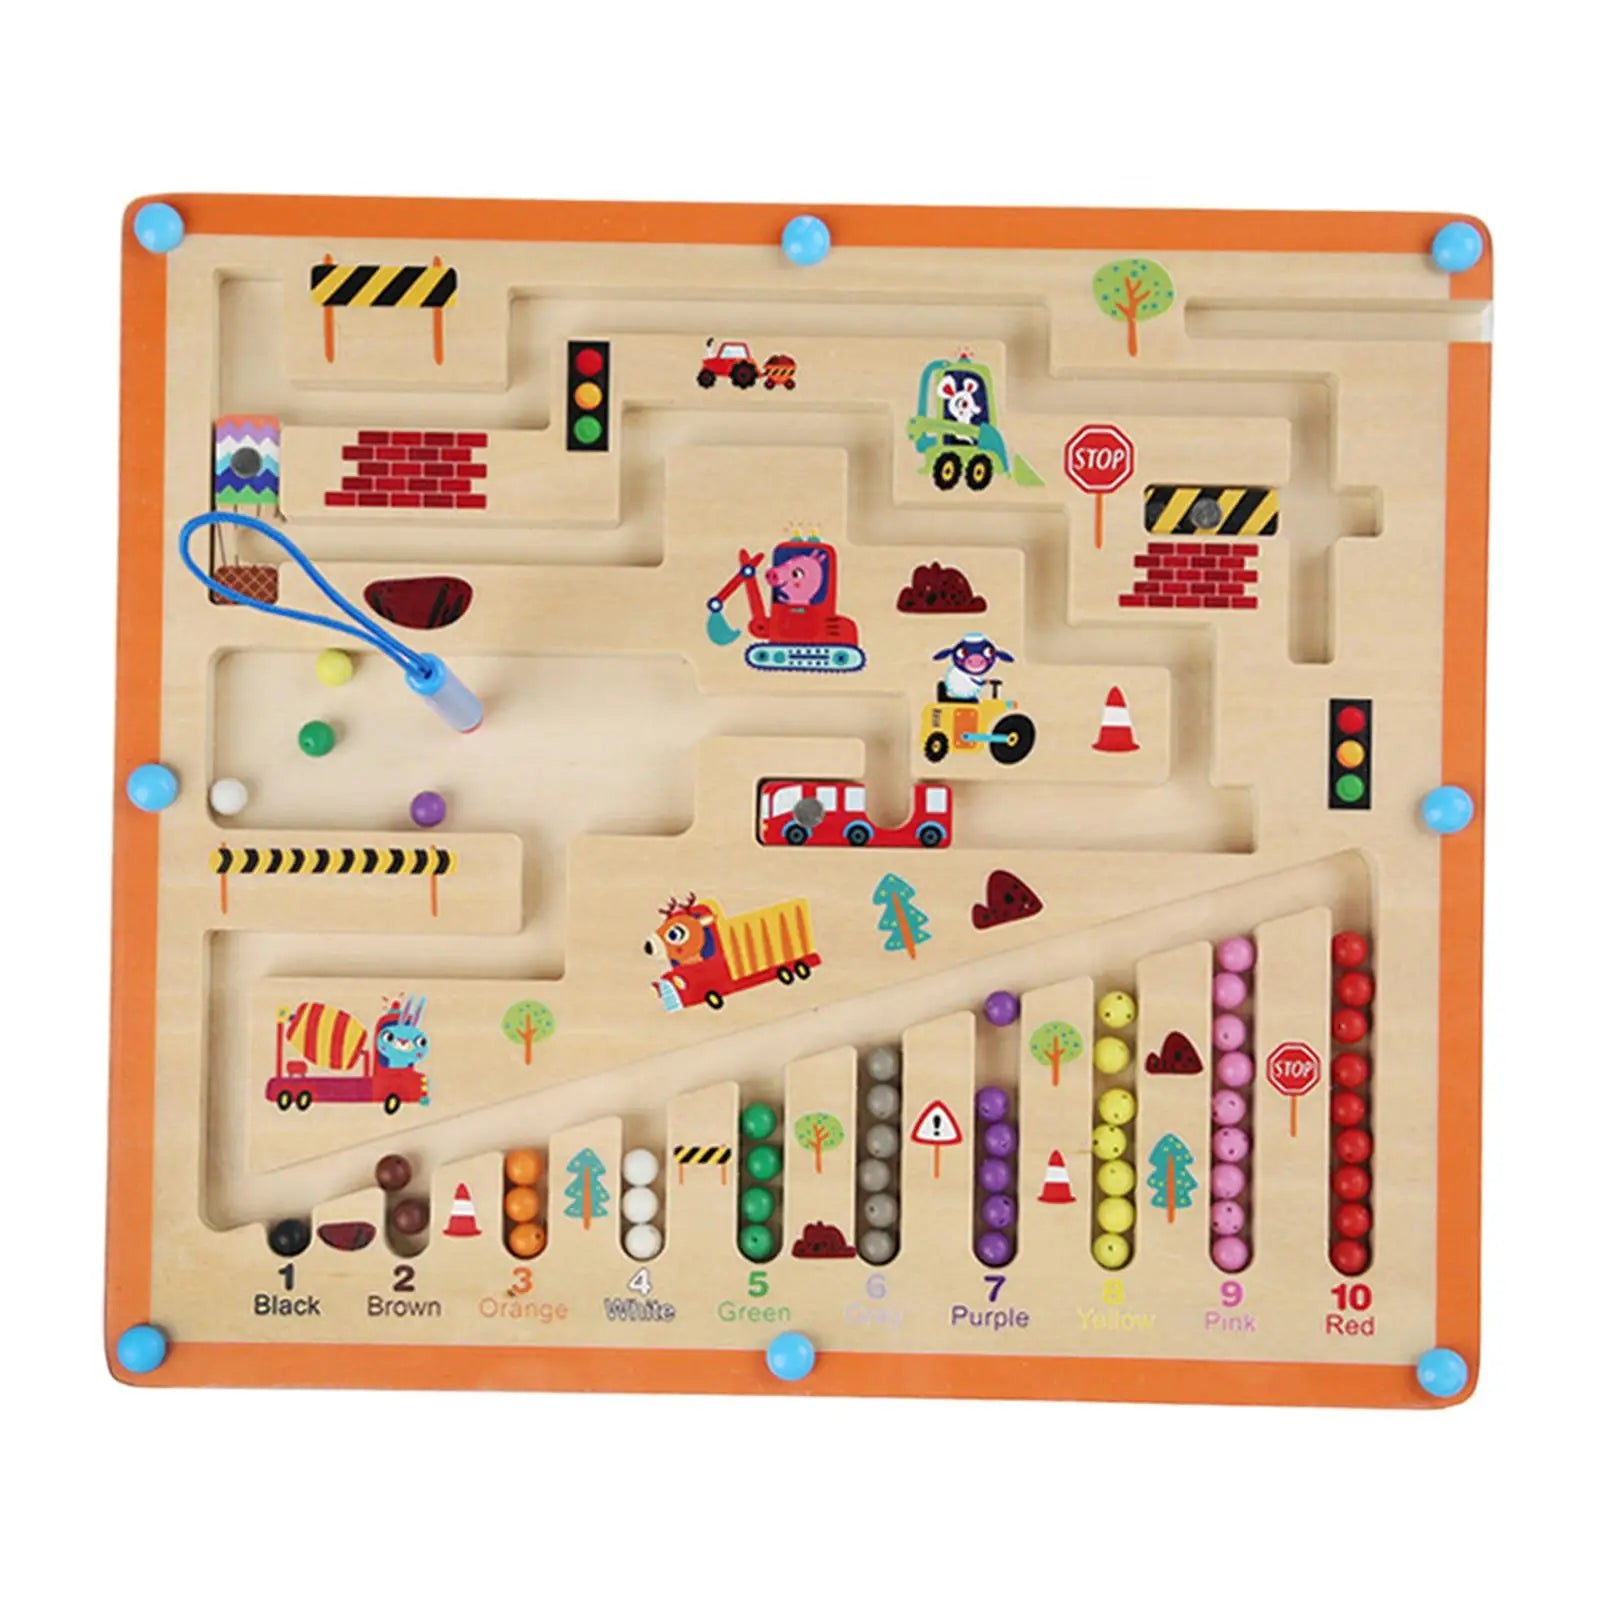 Construction Theme Maze Game